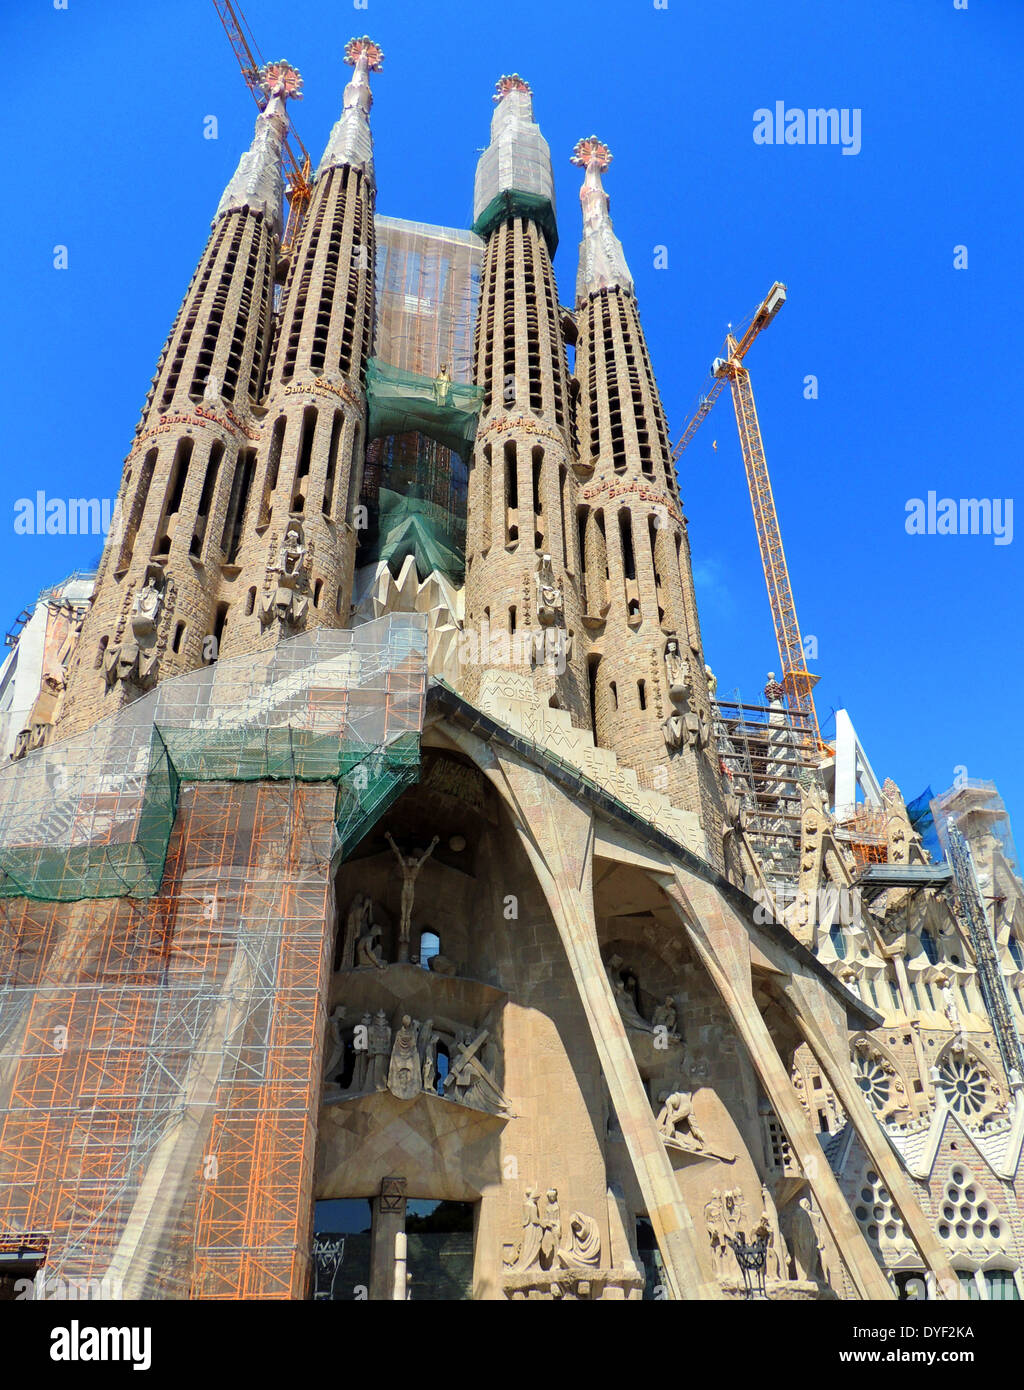 The Basílica i Temple de la Sagrada Família, Roman Catholic church in ...